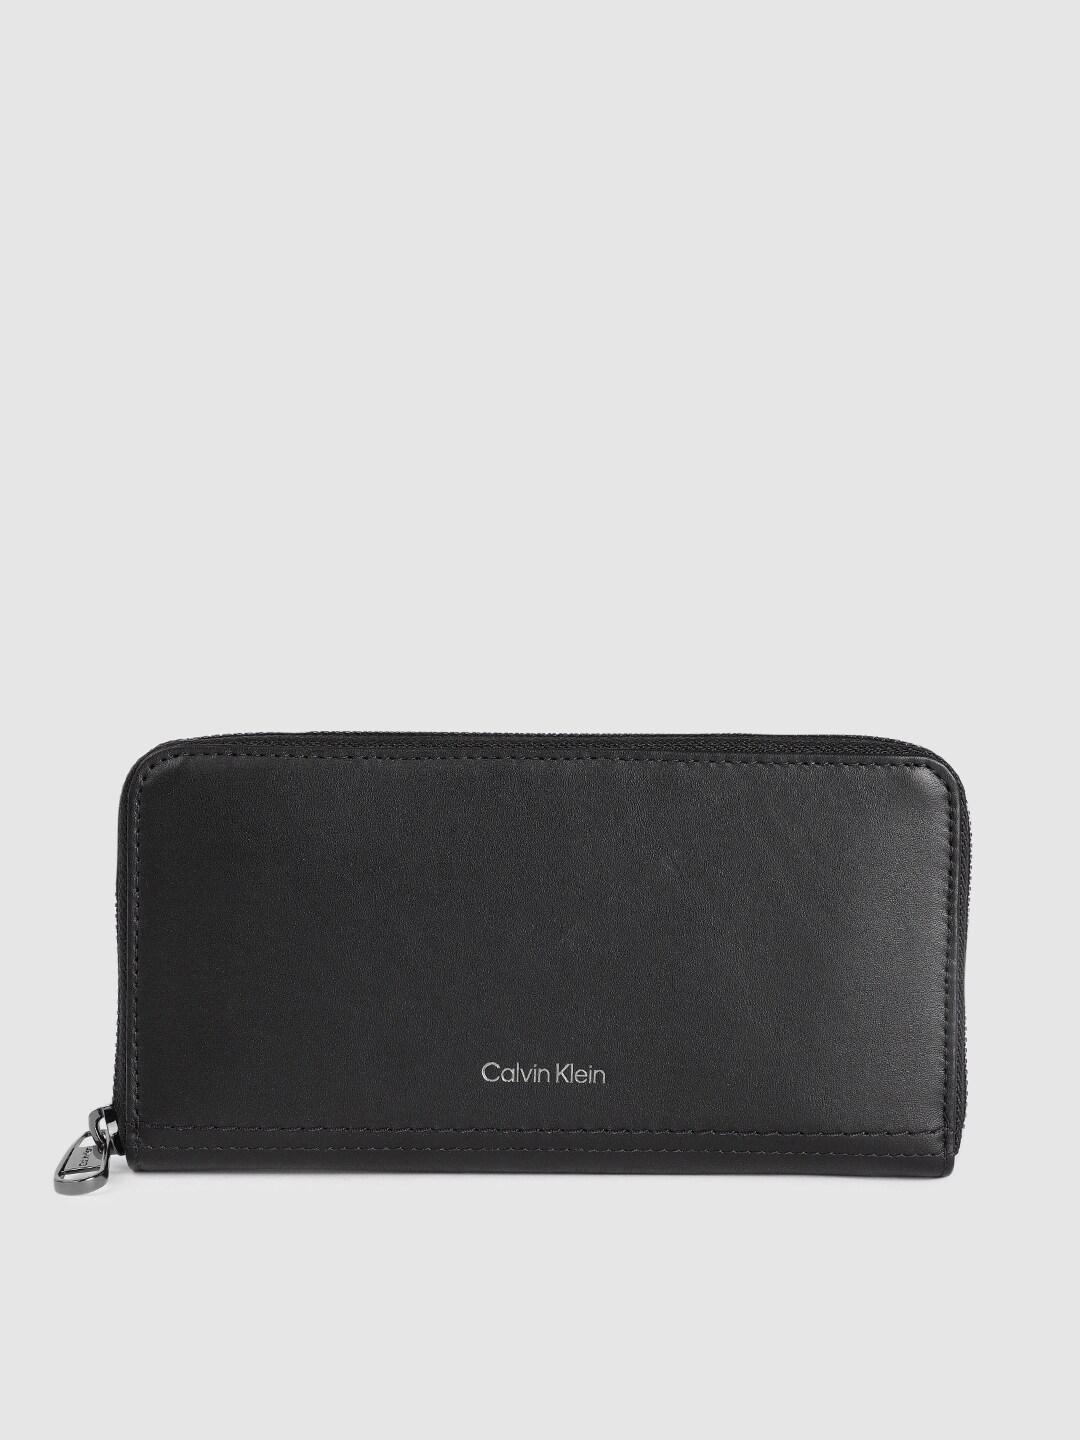 calvin-klein-men-solid-leather-zip-around-wallet-with-rfid